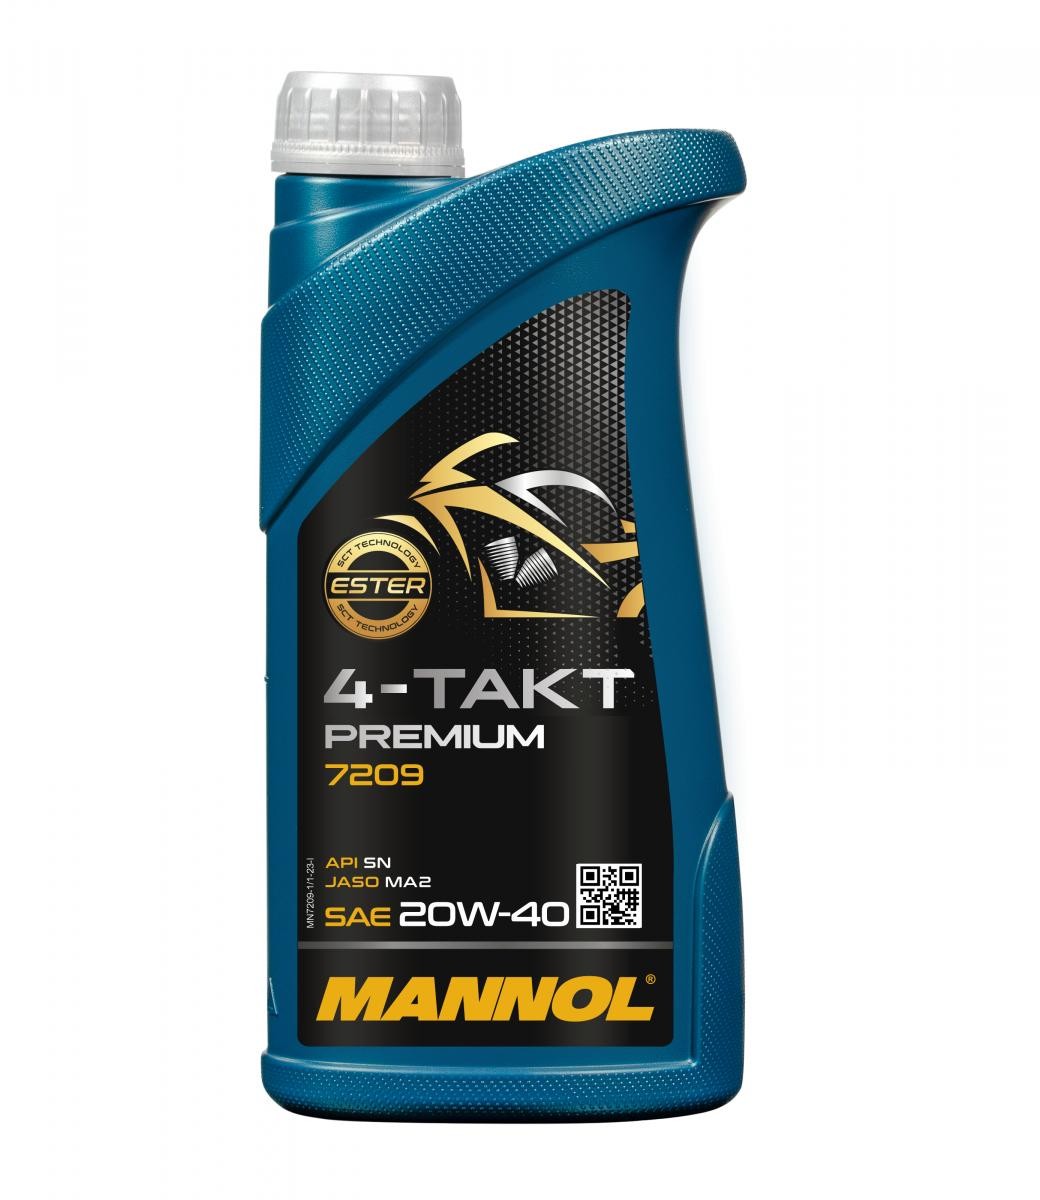 Motor oil API SM MANNOL - MN7209-1 Premium